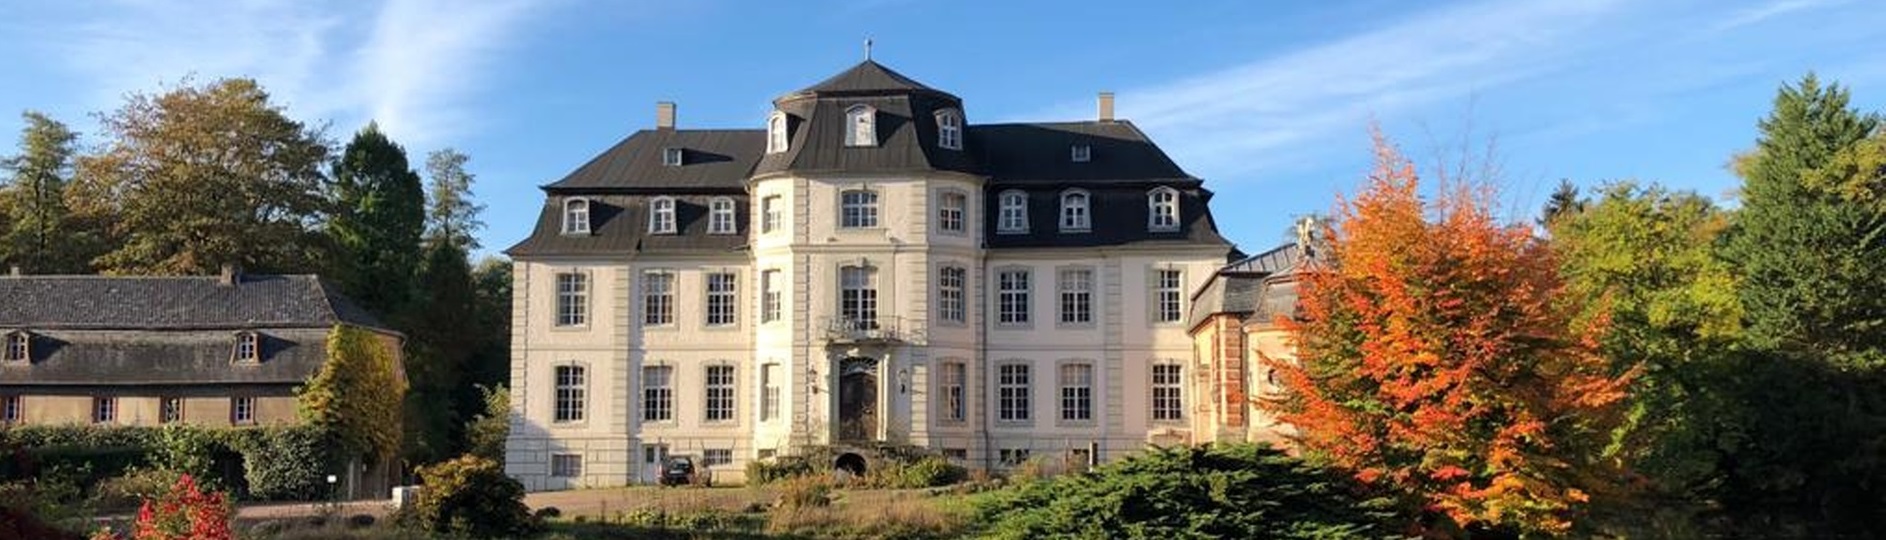 Schloss Türnich - Das Ensemble in seiner ganzen Pracht